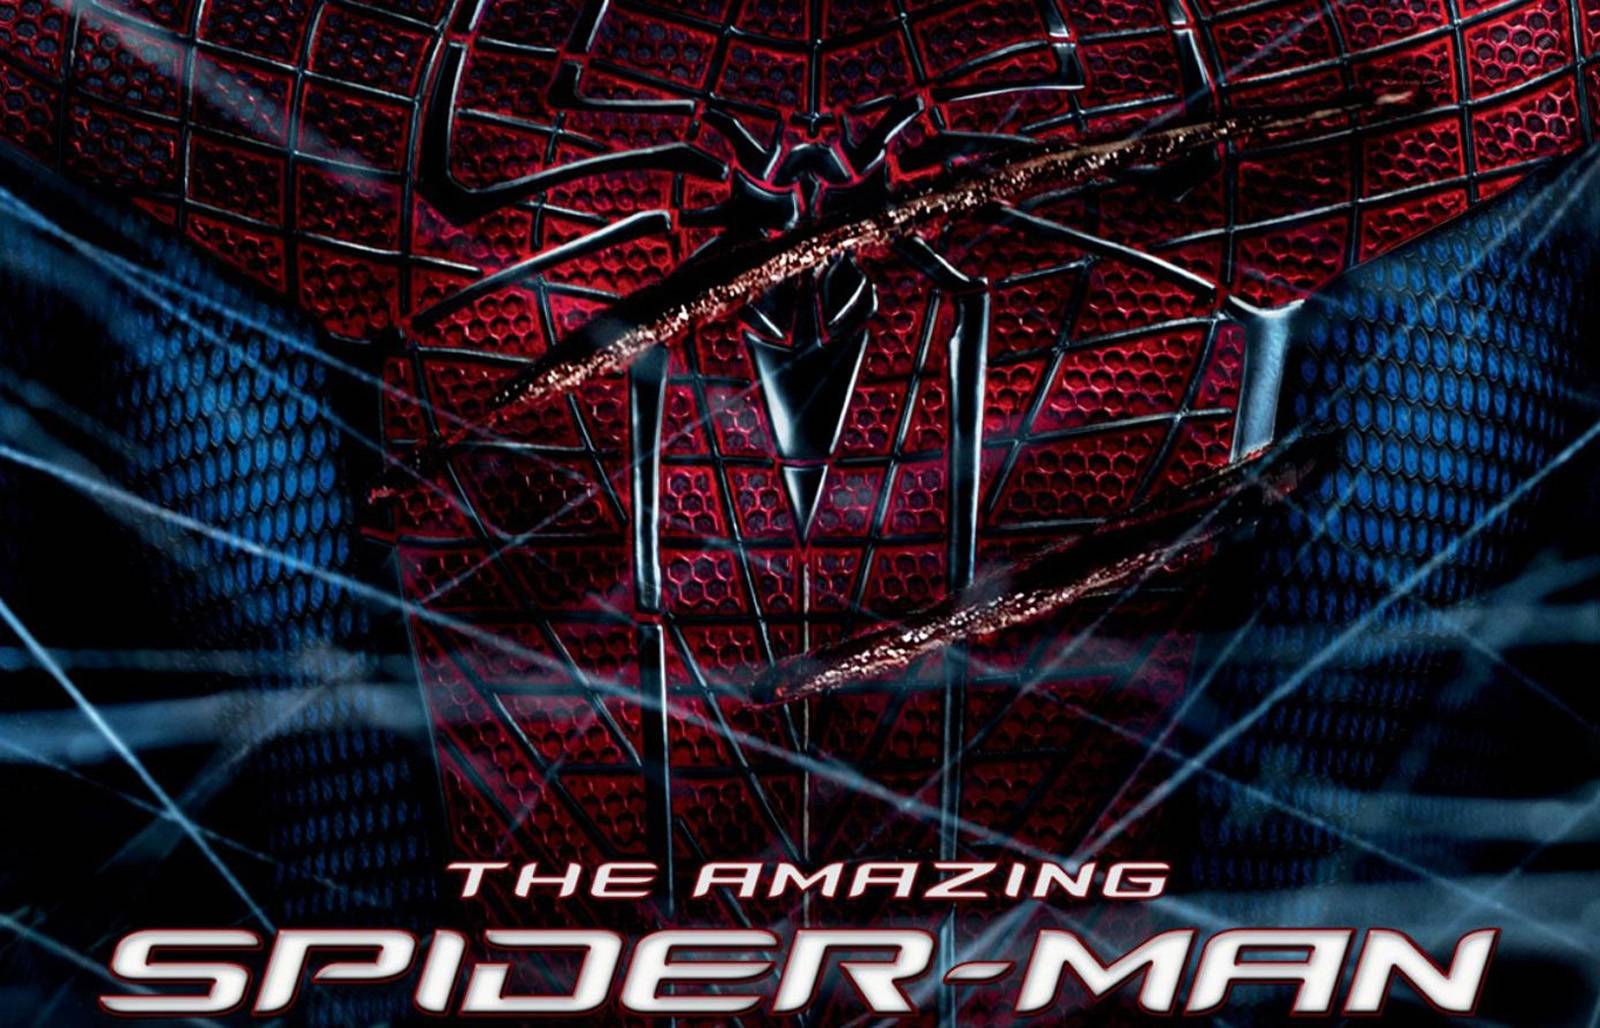 Spiderman 4 Movie Trailer